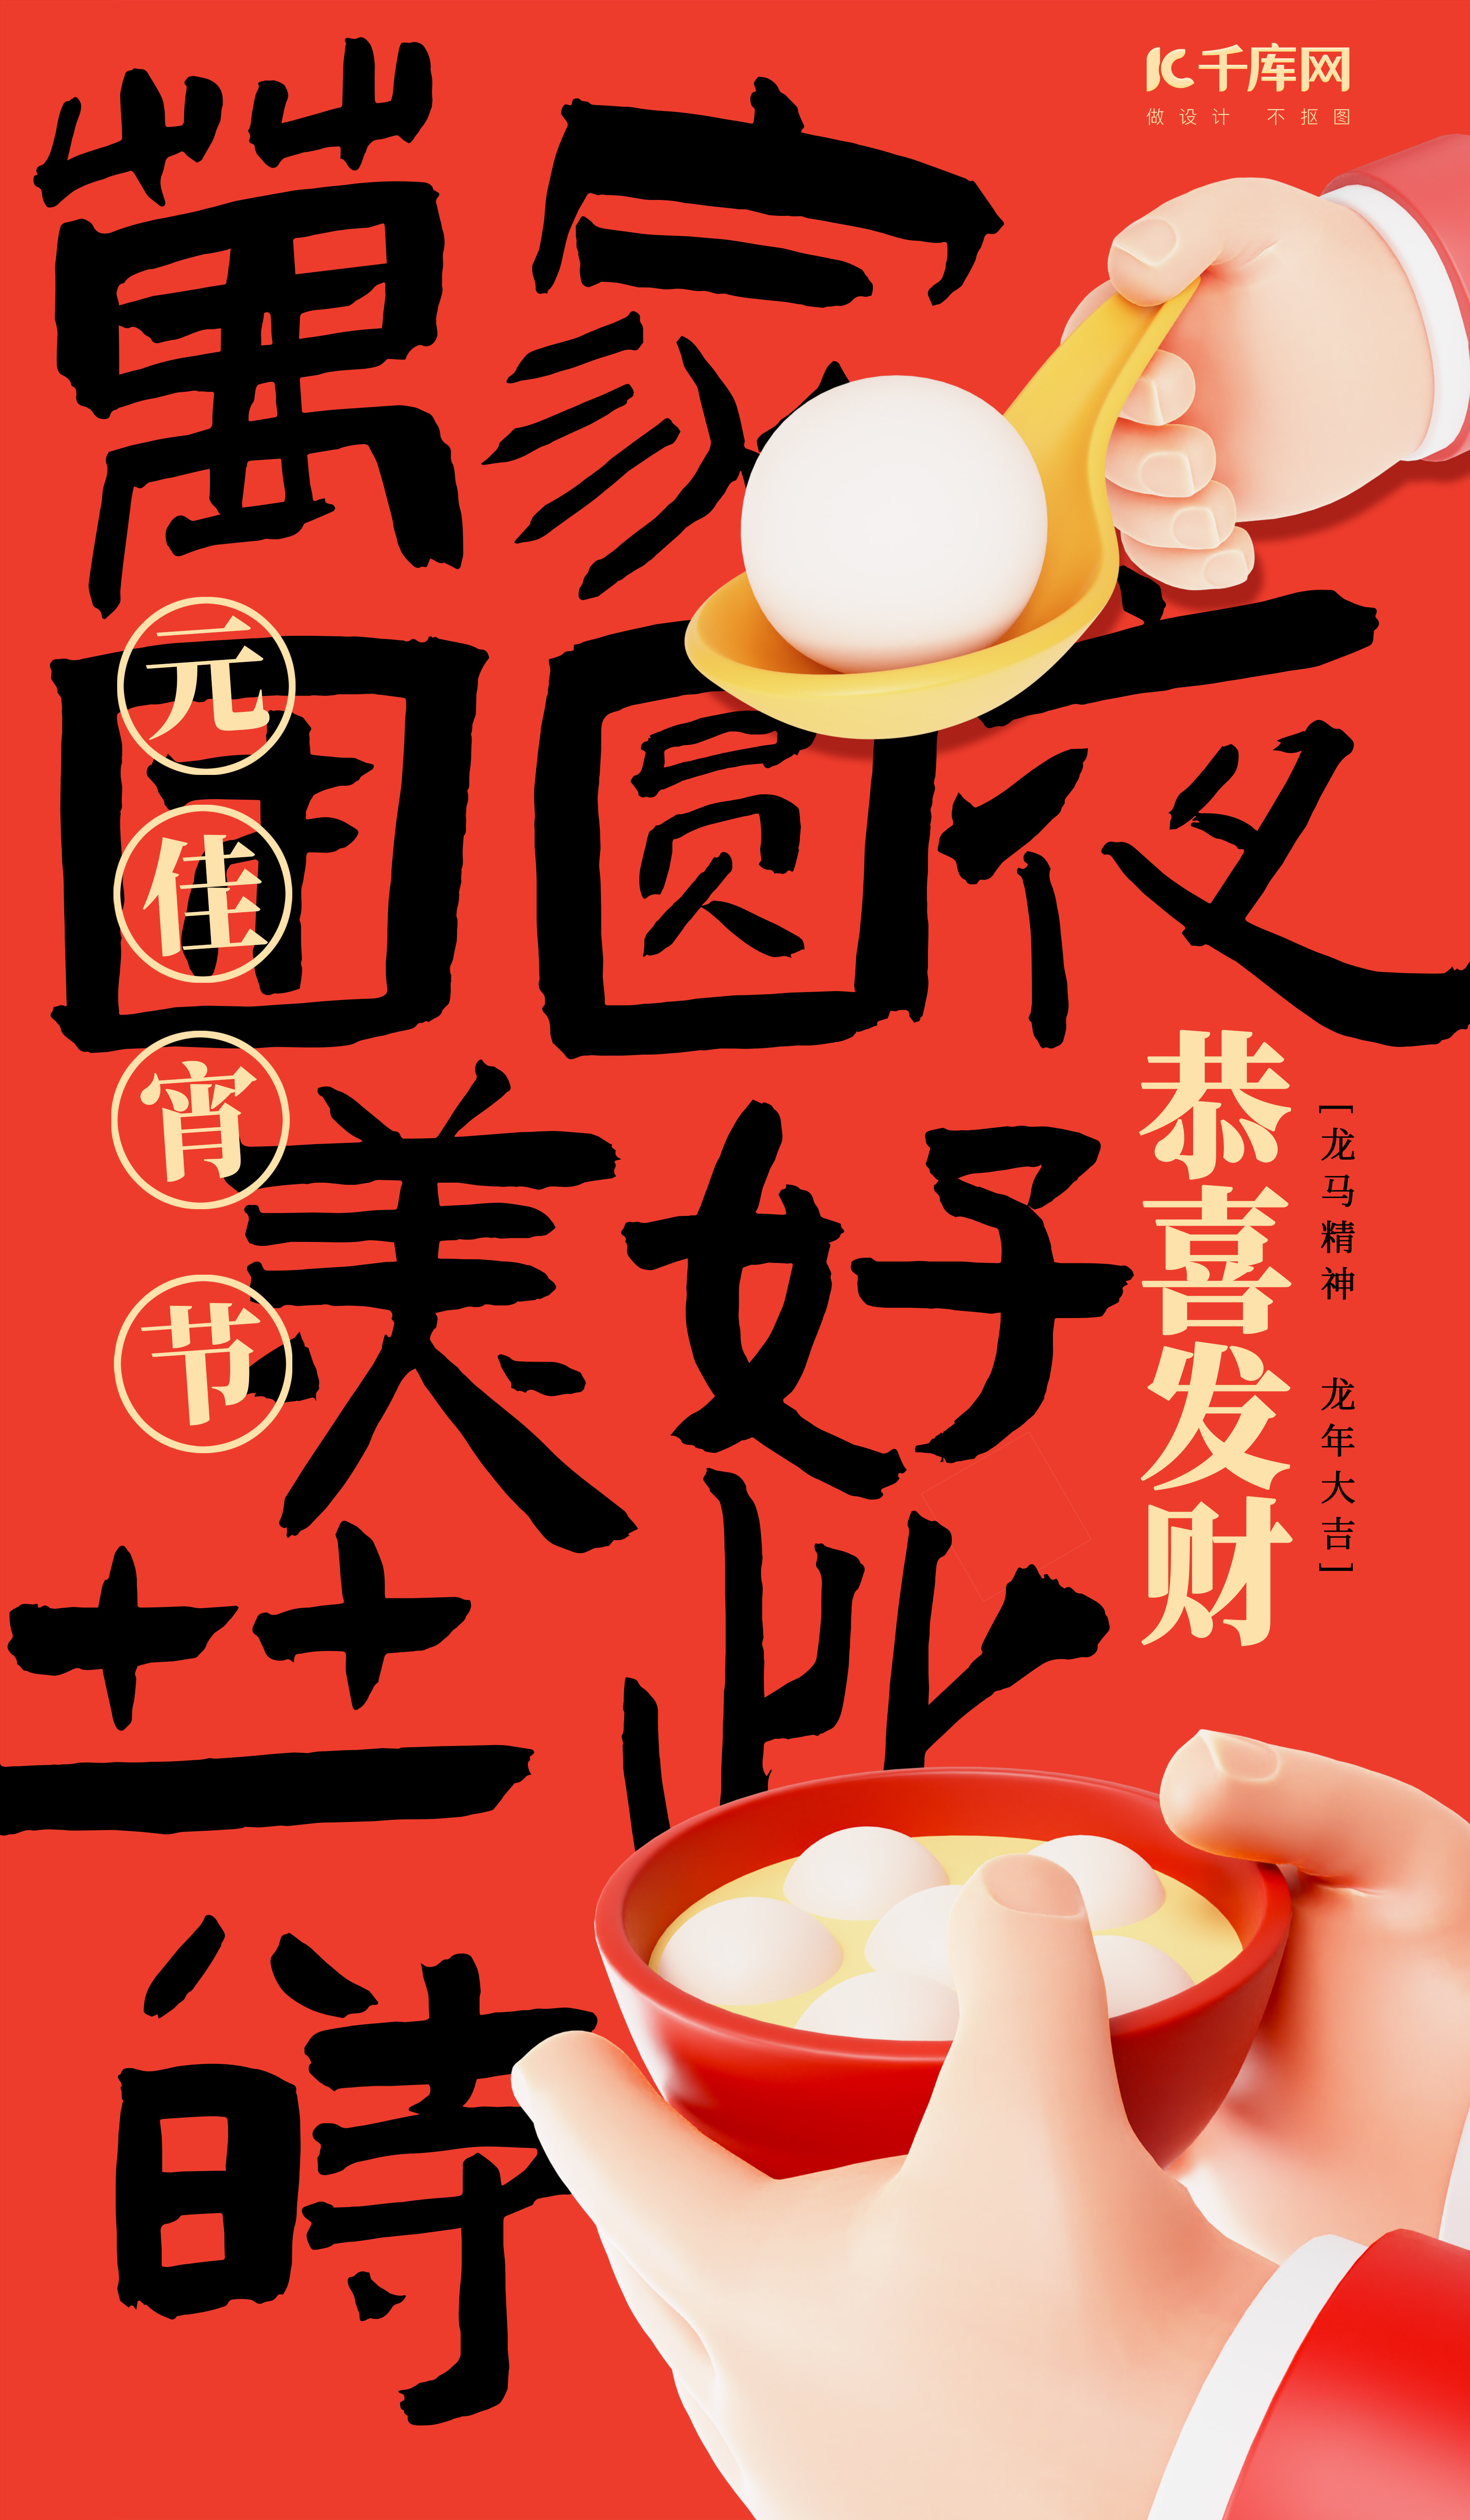 元宵节节日祝福橙色大字简约海报手机海报设计图片